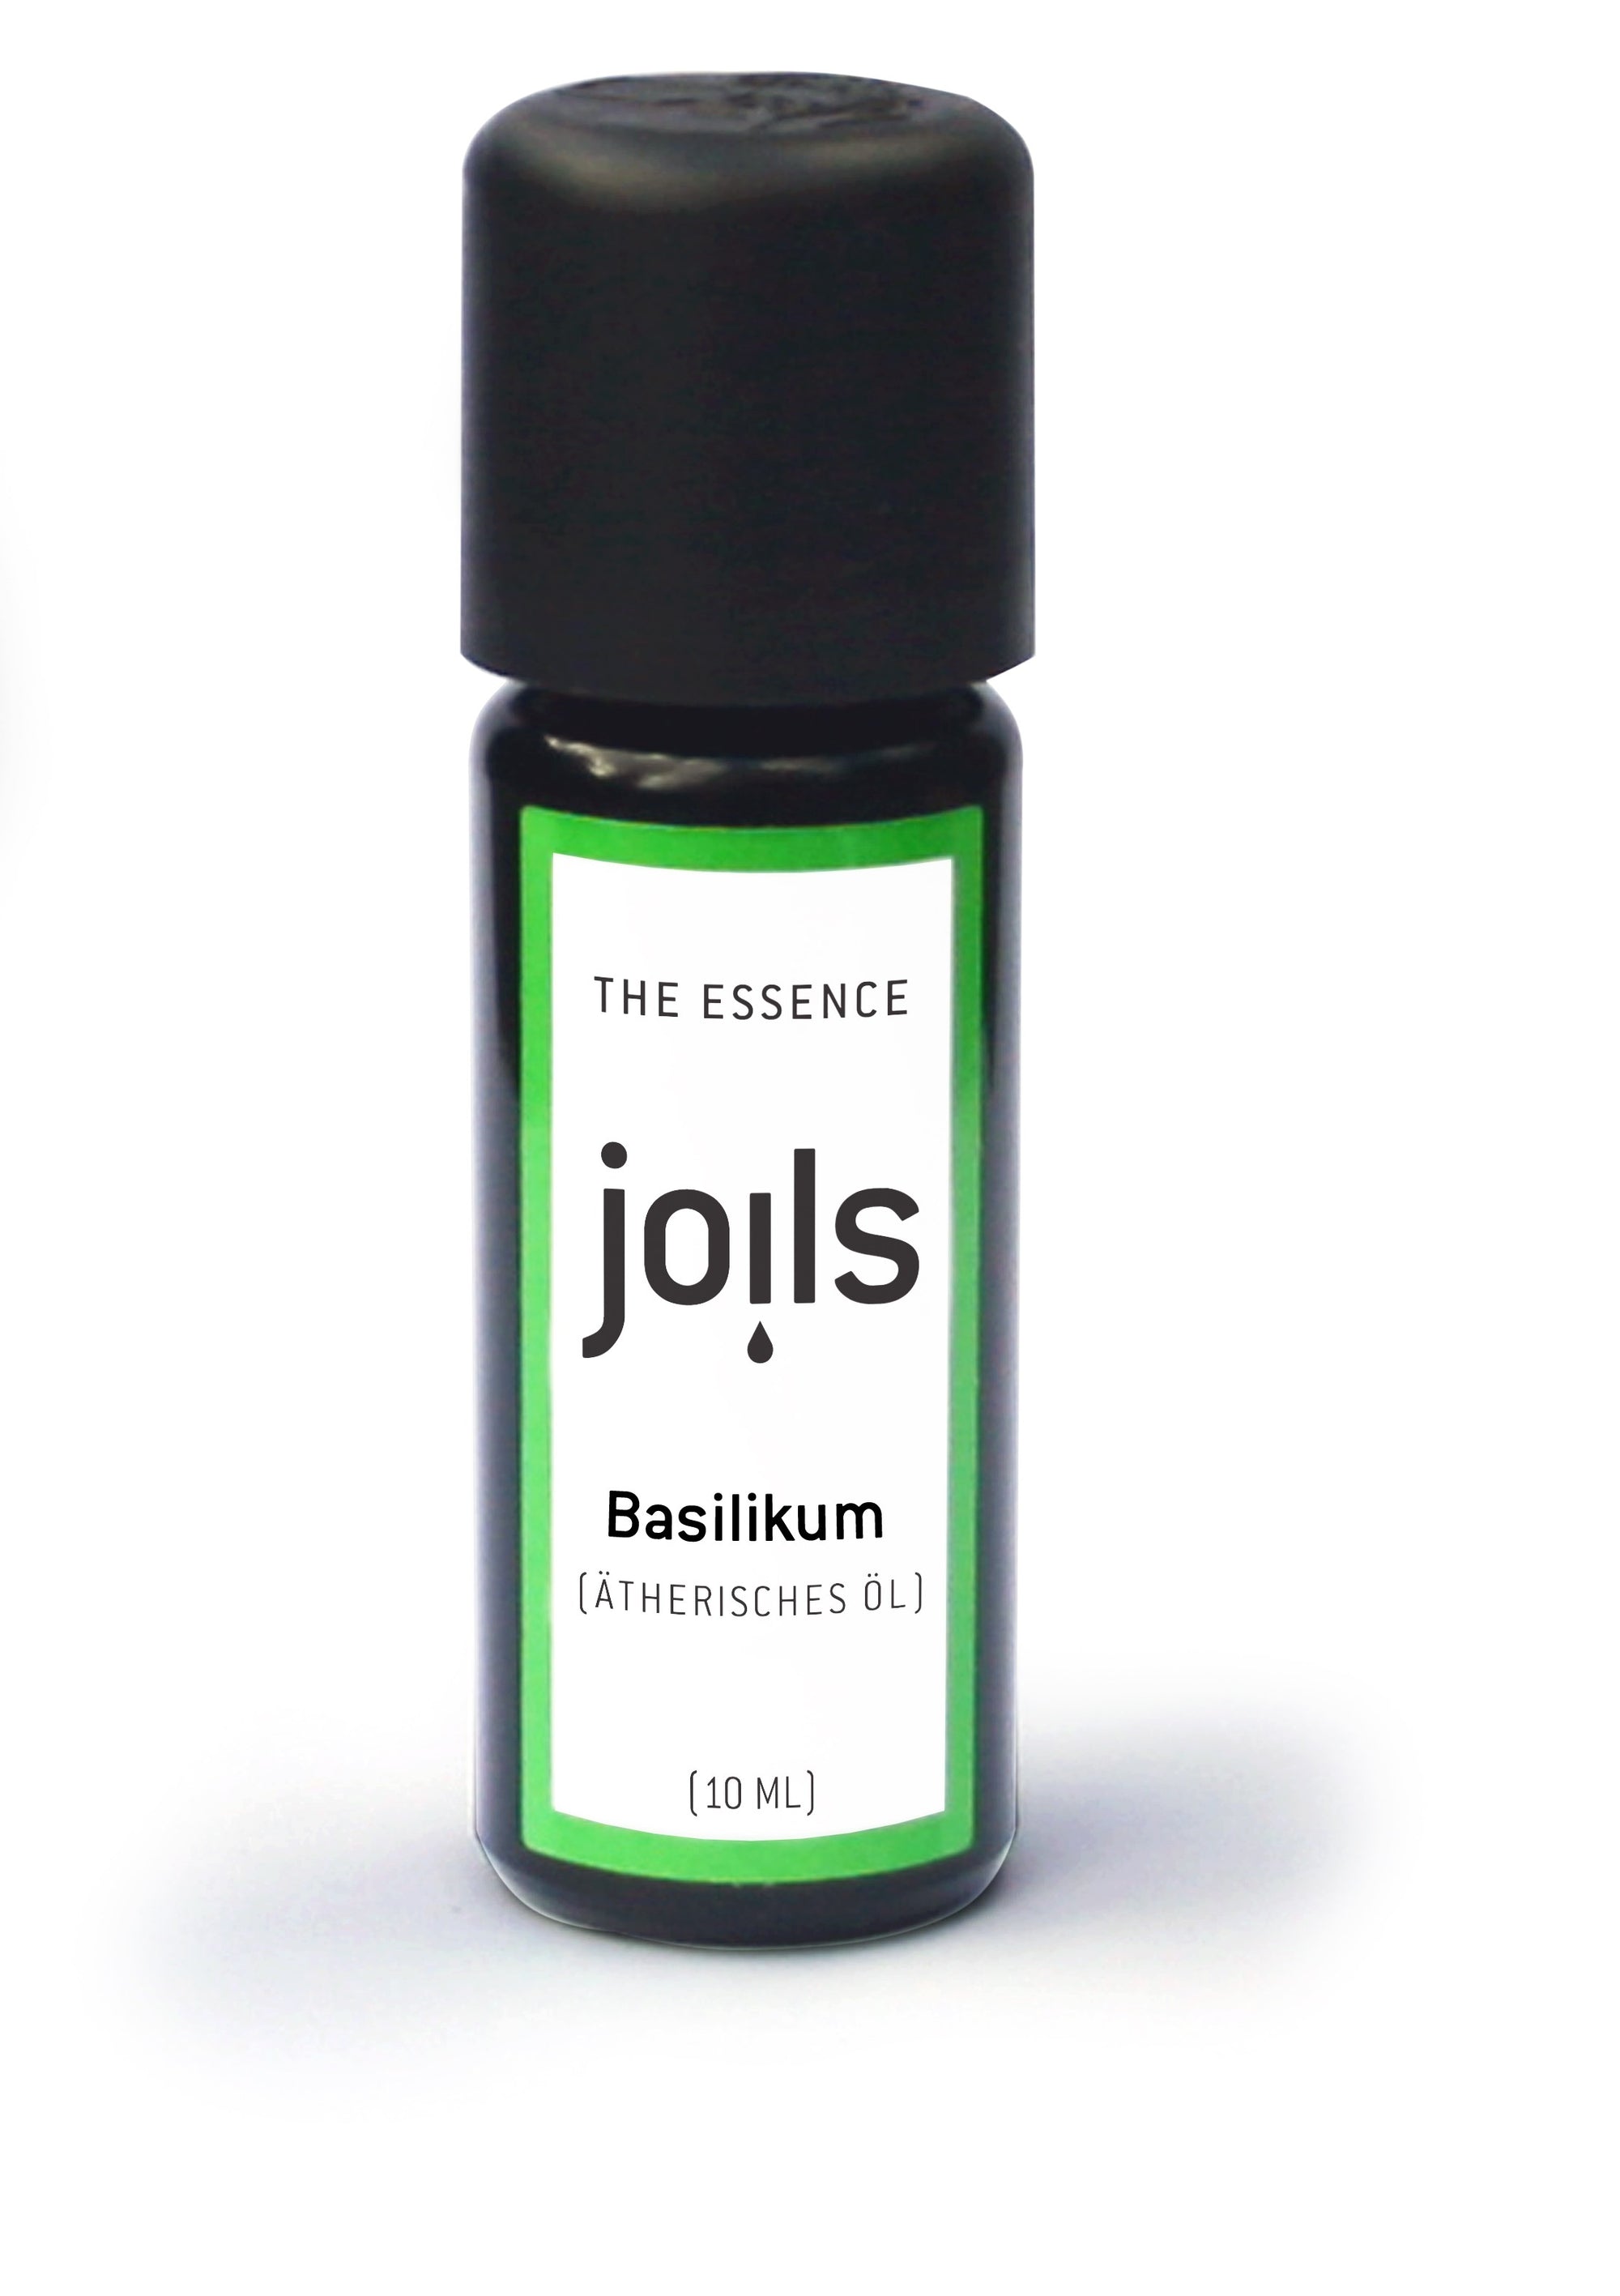 BASILIKUM 10ml - Joils Duftöl für Aromatherapie aus 100% naturreinen ätherischen  Ölen - Das Aromaöl für Duftlampe & Diffuser im Joils Shop